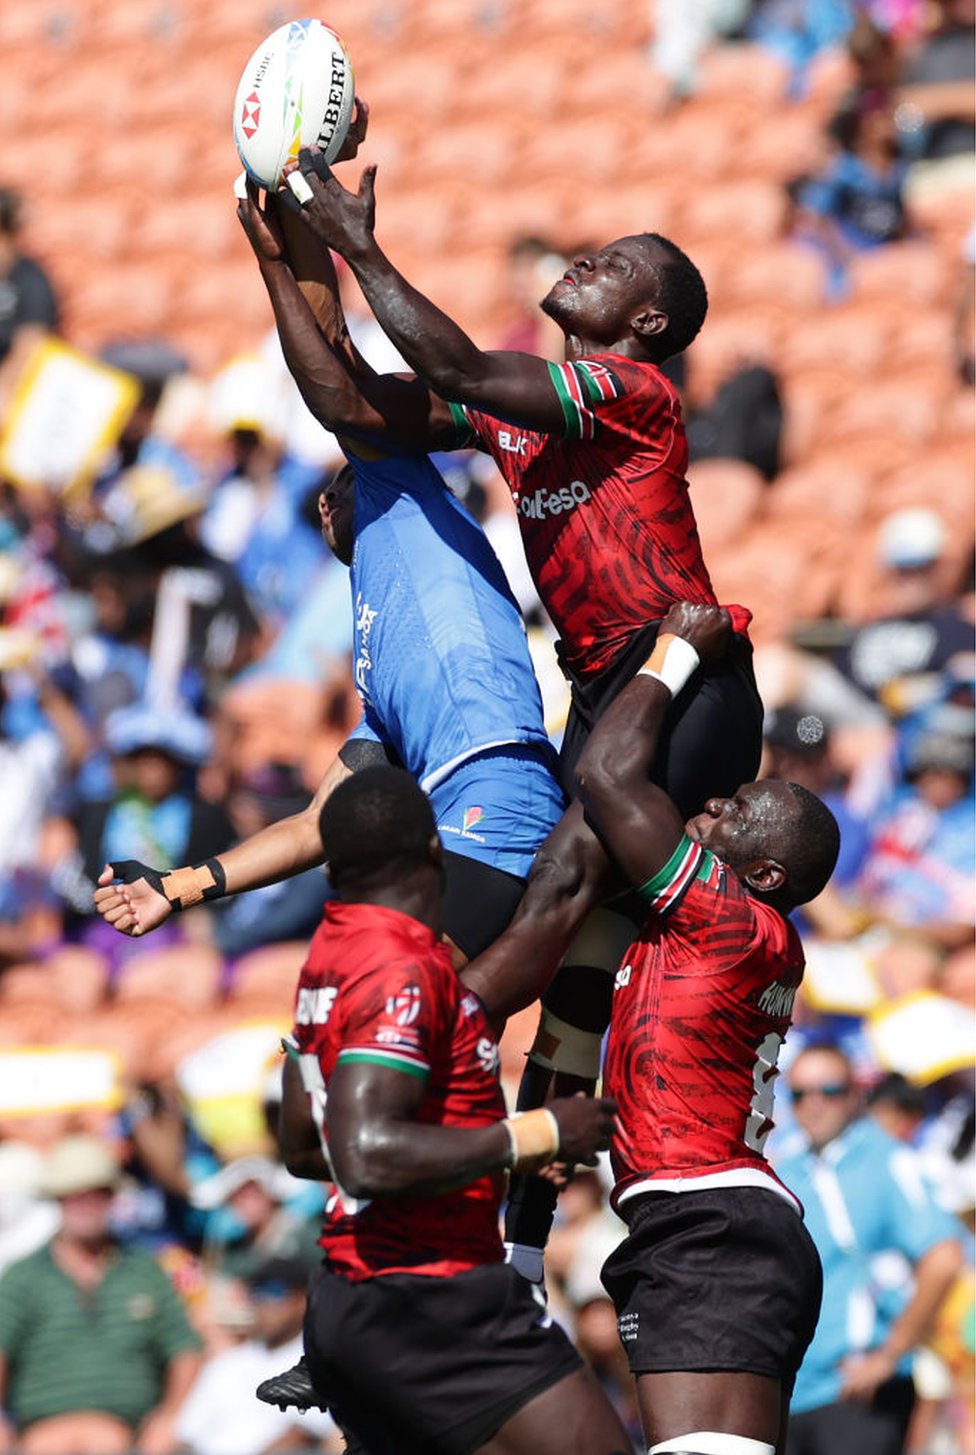 لاعبو "رغبي" من كينيا وساموا يمسكون بالكرة في مباراة "السباعي" بين البلدين في نيوزيلندة.